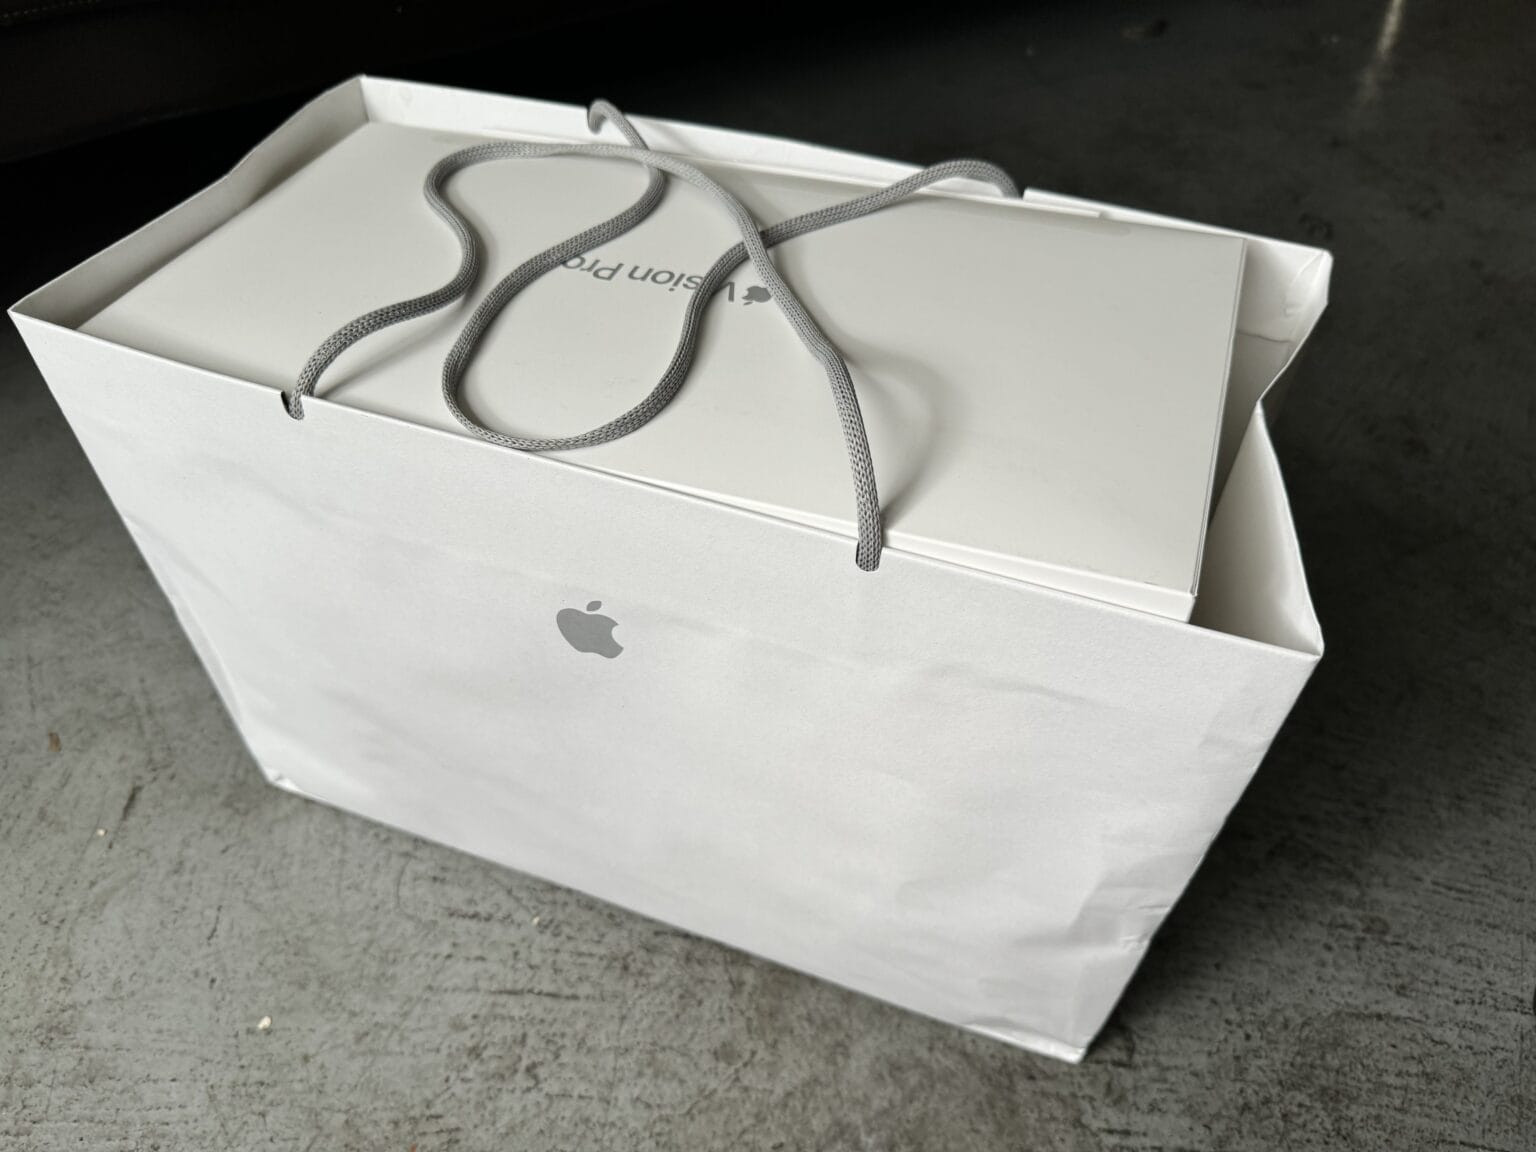 Những người mua Vision Pro đầu tiên bắt đầu gói ghém thiết bị để trả lại cho Apple. (Ảnh: Cult of Mac)

